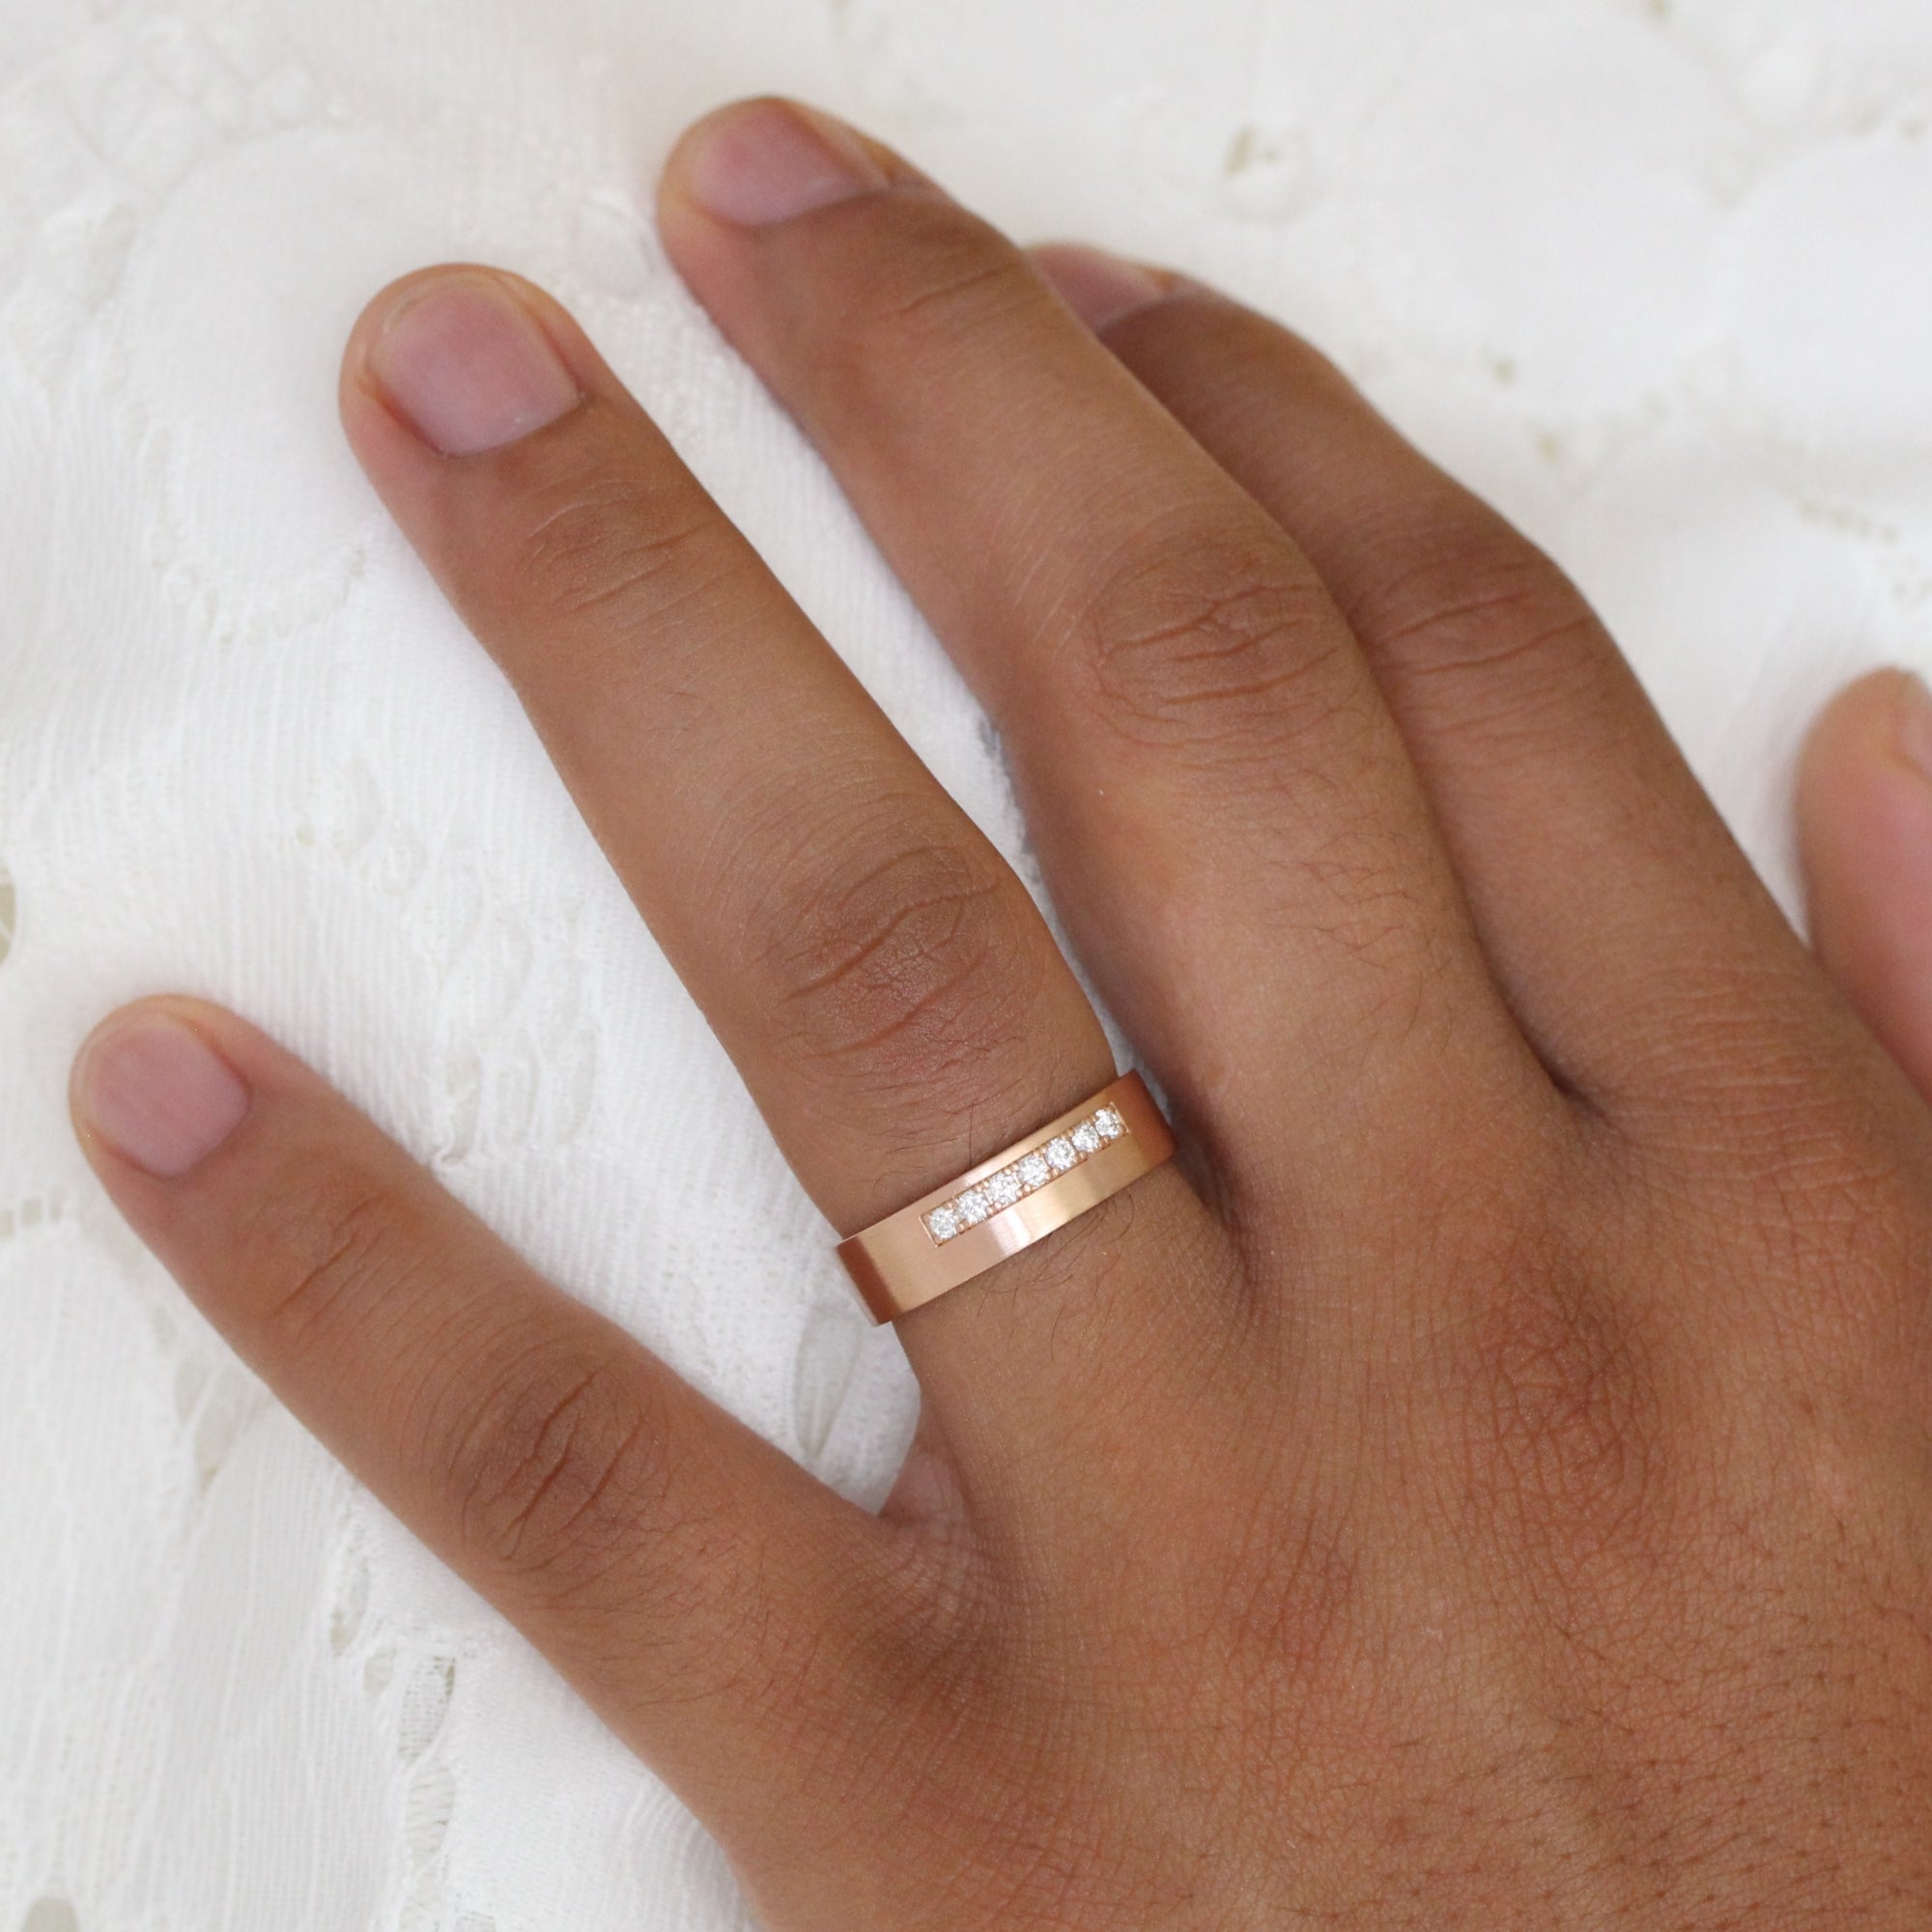 rose gold wedding rings for men